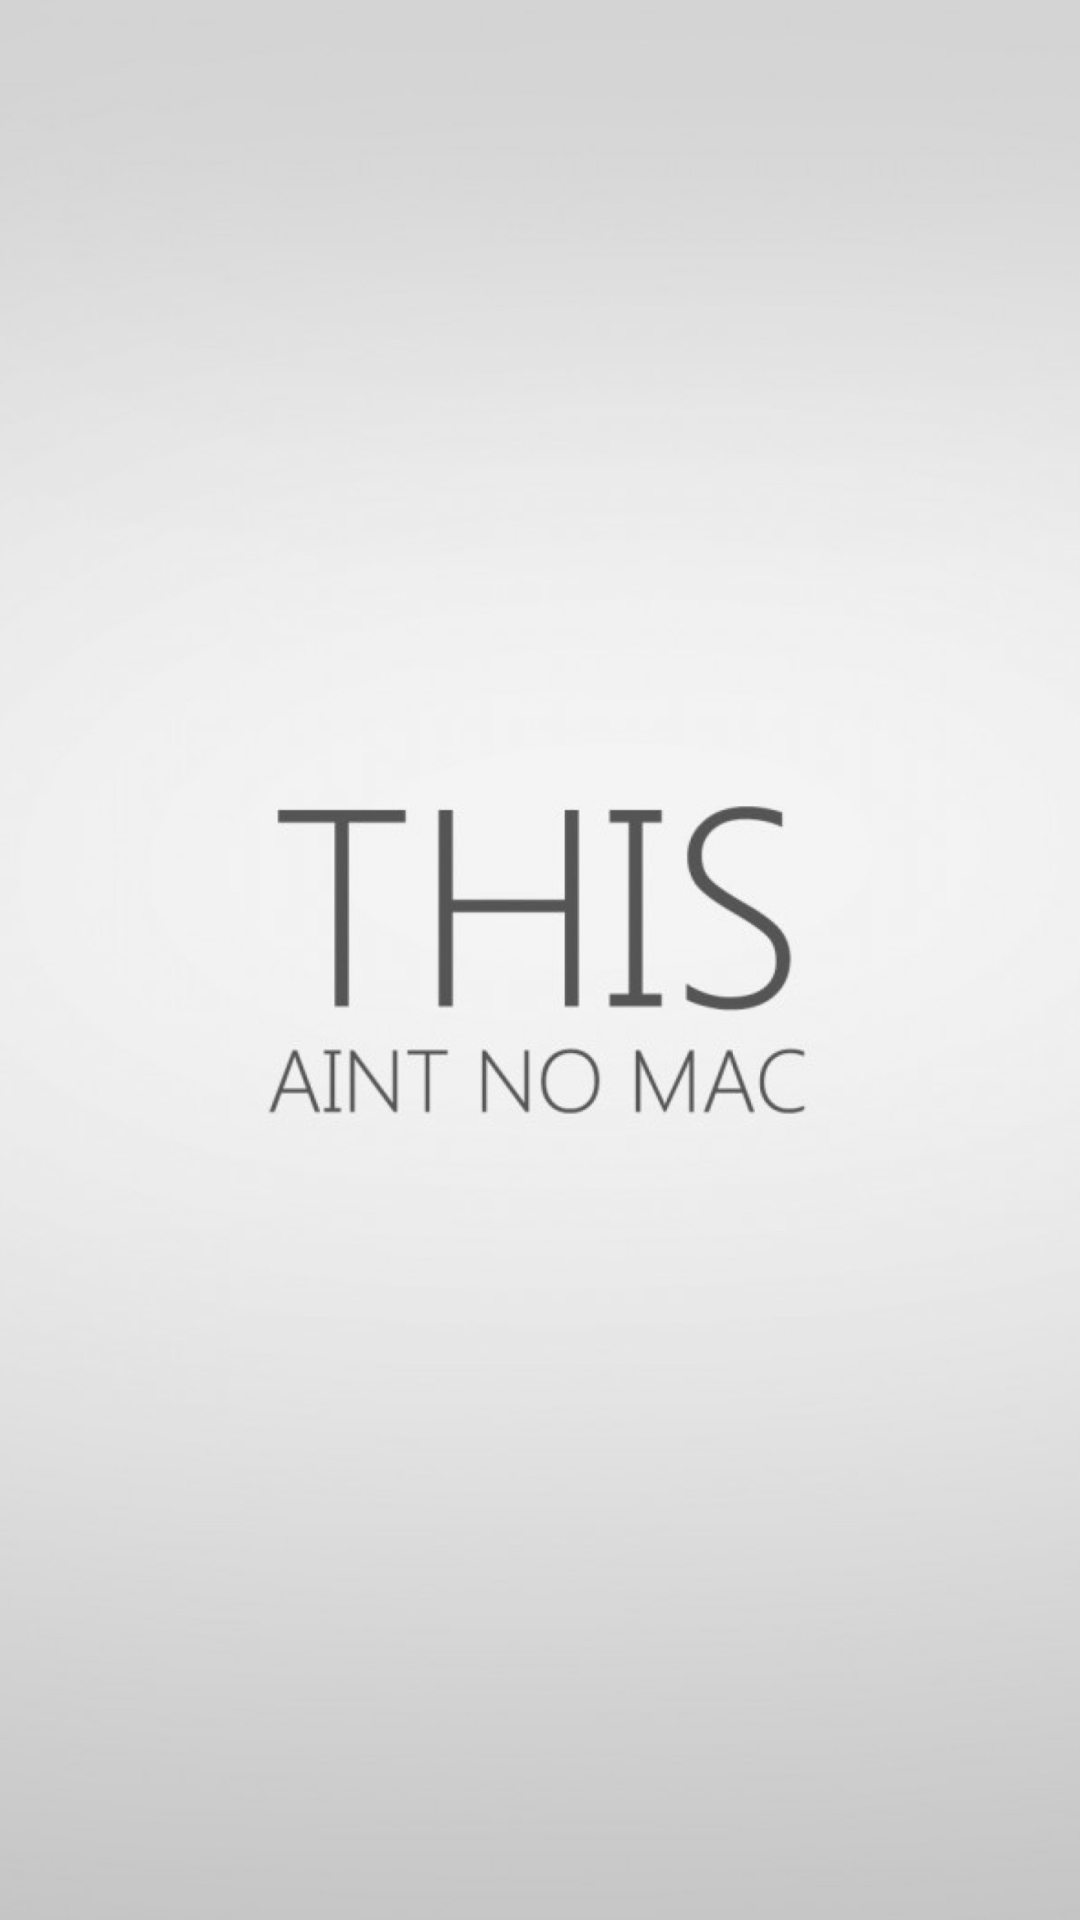 Ain't No Mac screenshot #1 1080x1920